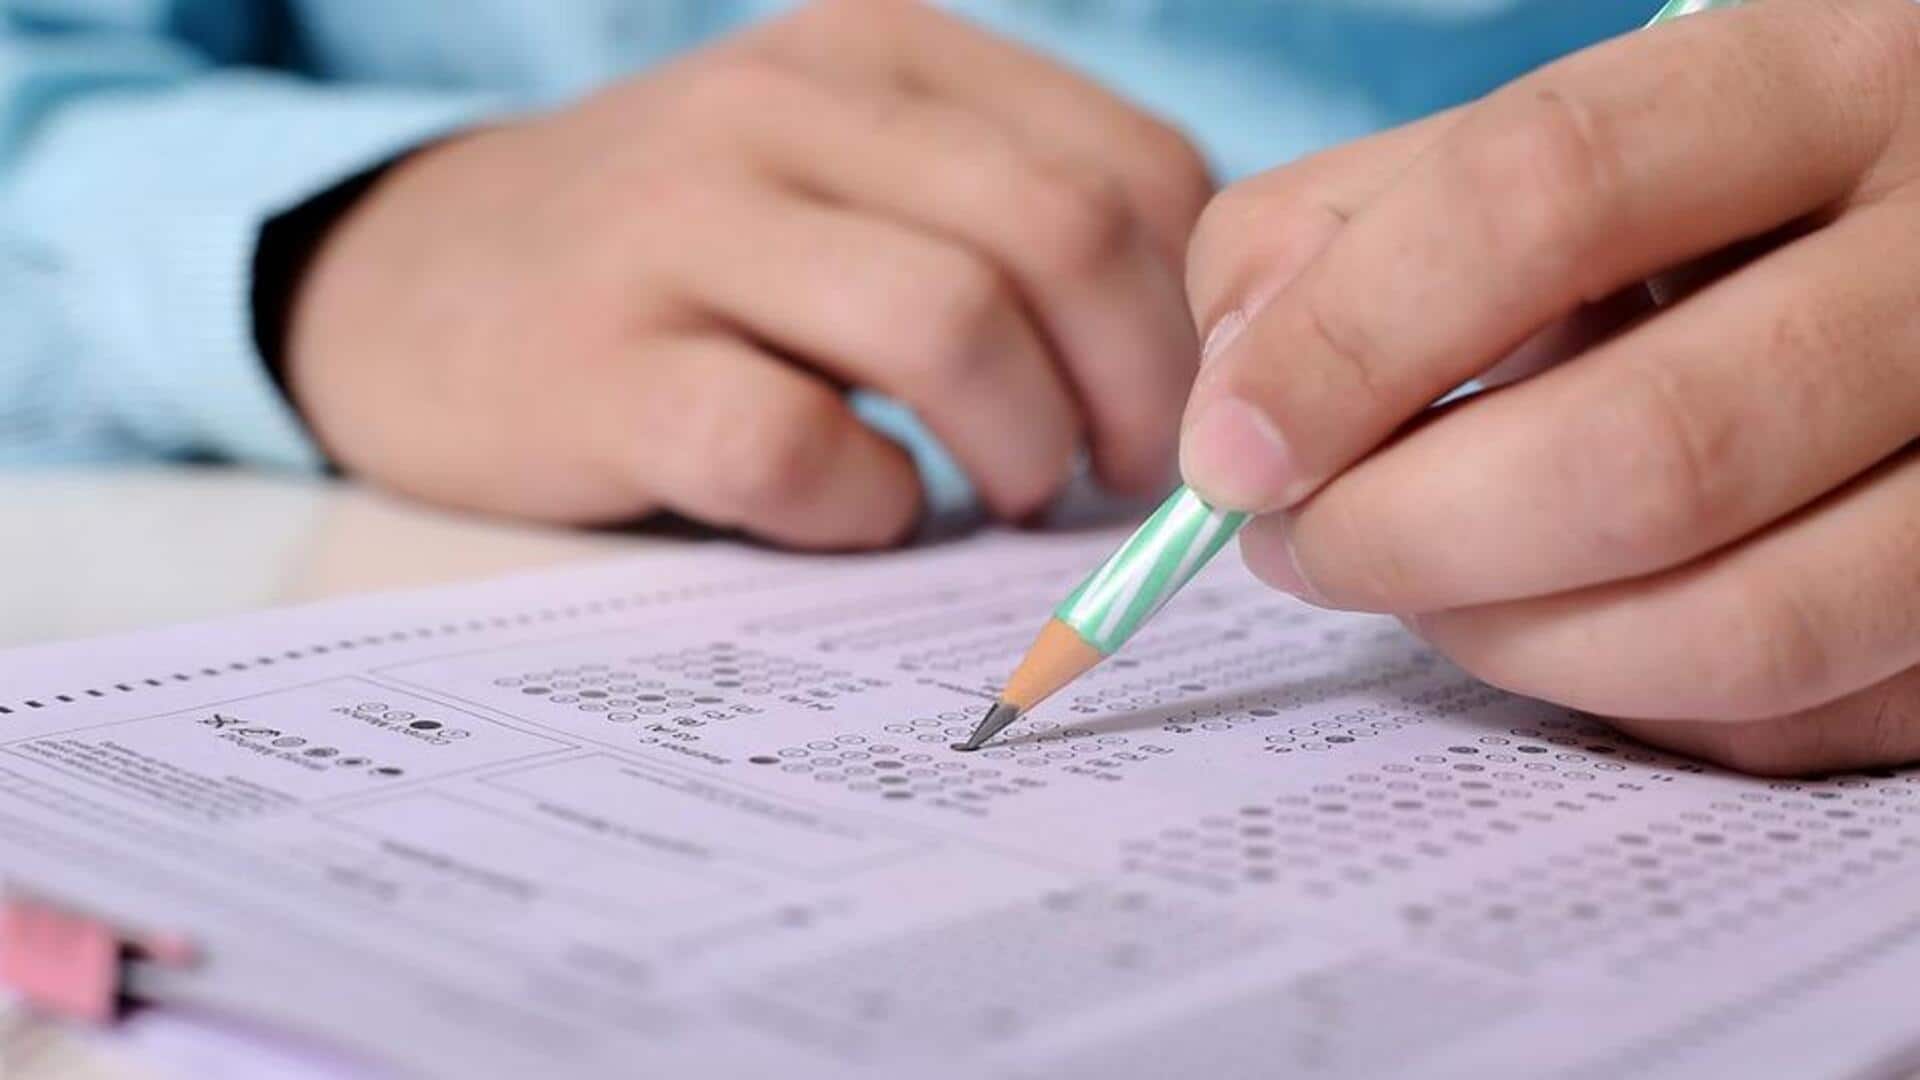 बिहार: कक्षा 10 की कंपार्टमेंट परीक्षा का टाइम टेबल जारी, 10 मई से शुरू होंगी परीक्षाएं